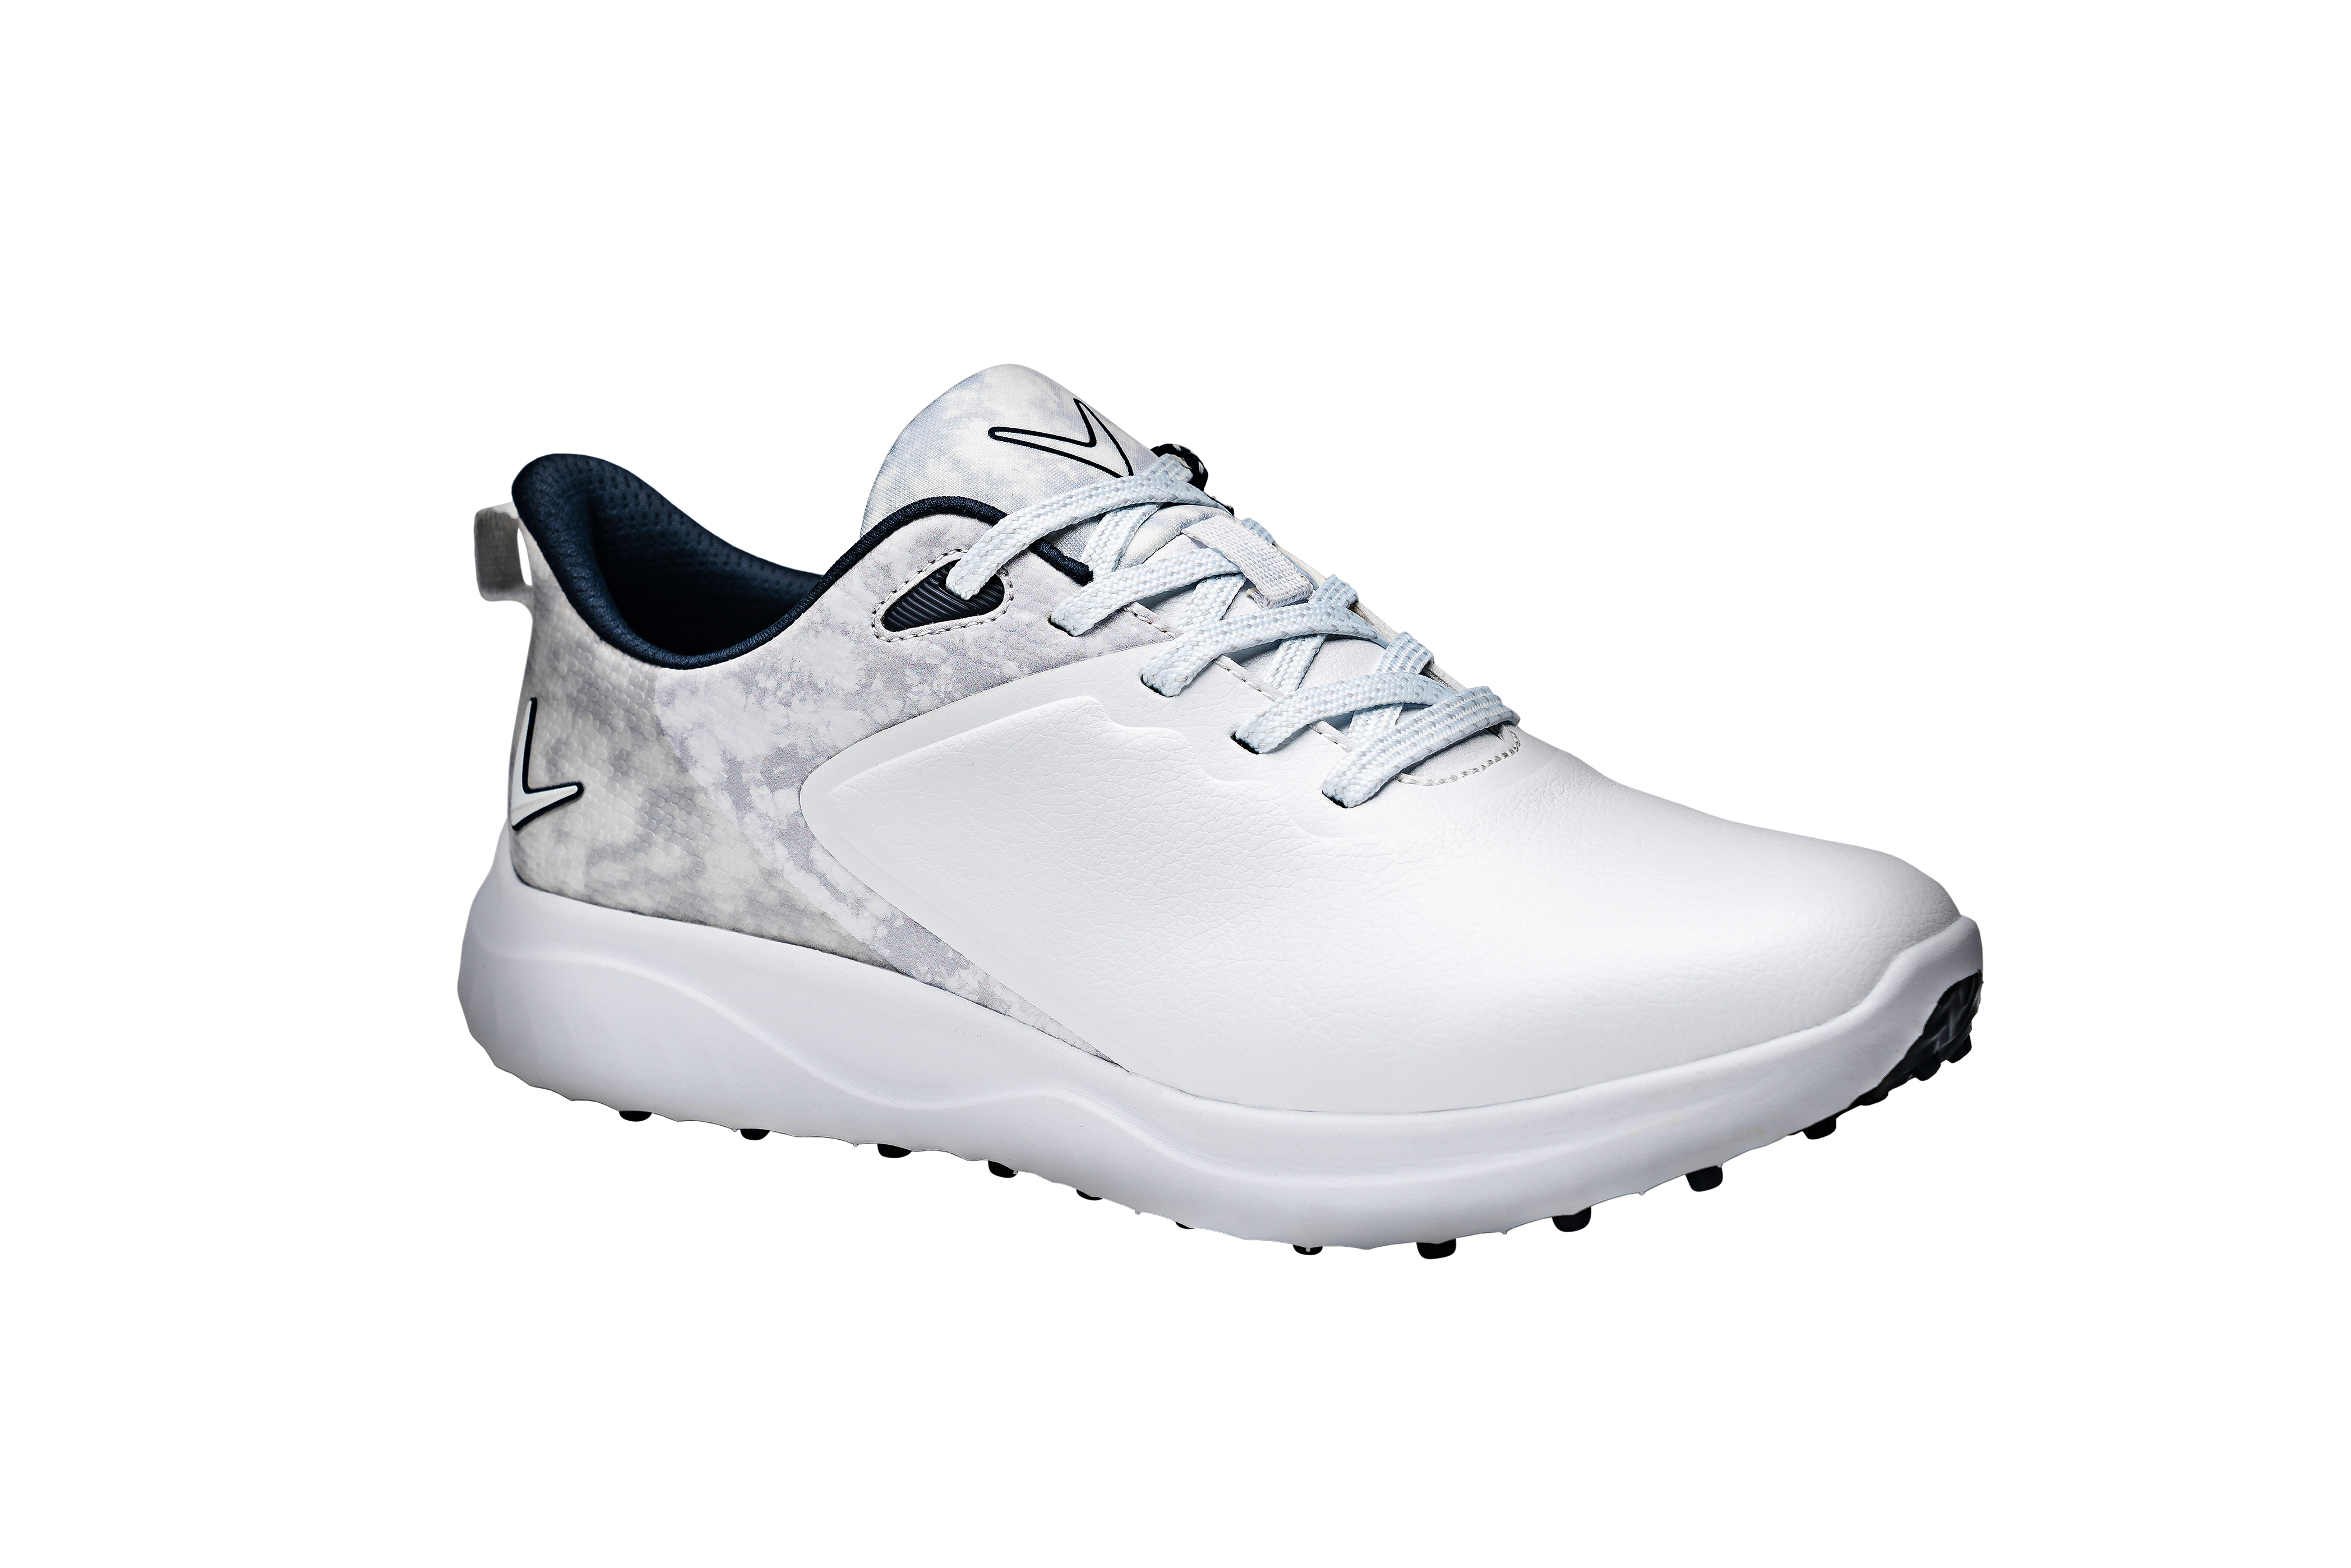 Callaway Anza dámské golfové boty, bílé/šedé, vel. 5 UK